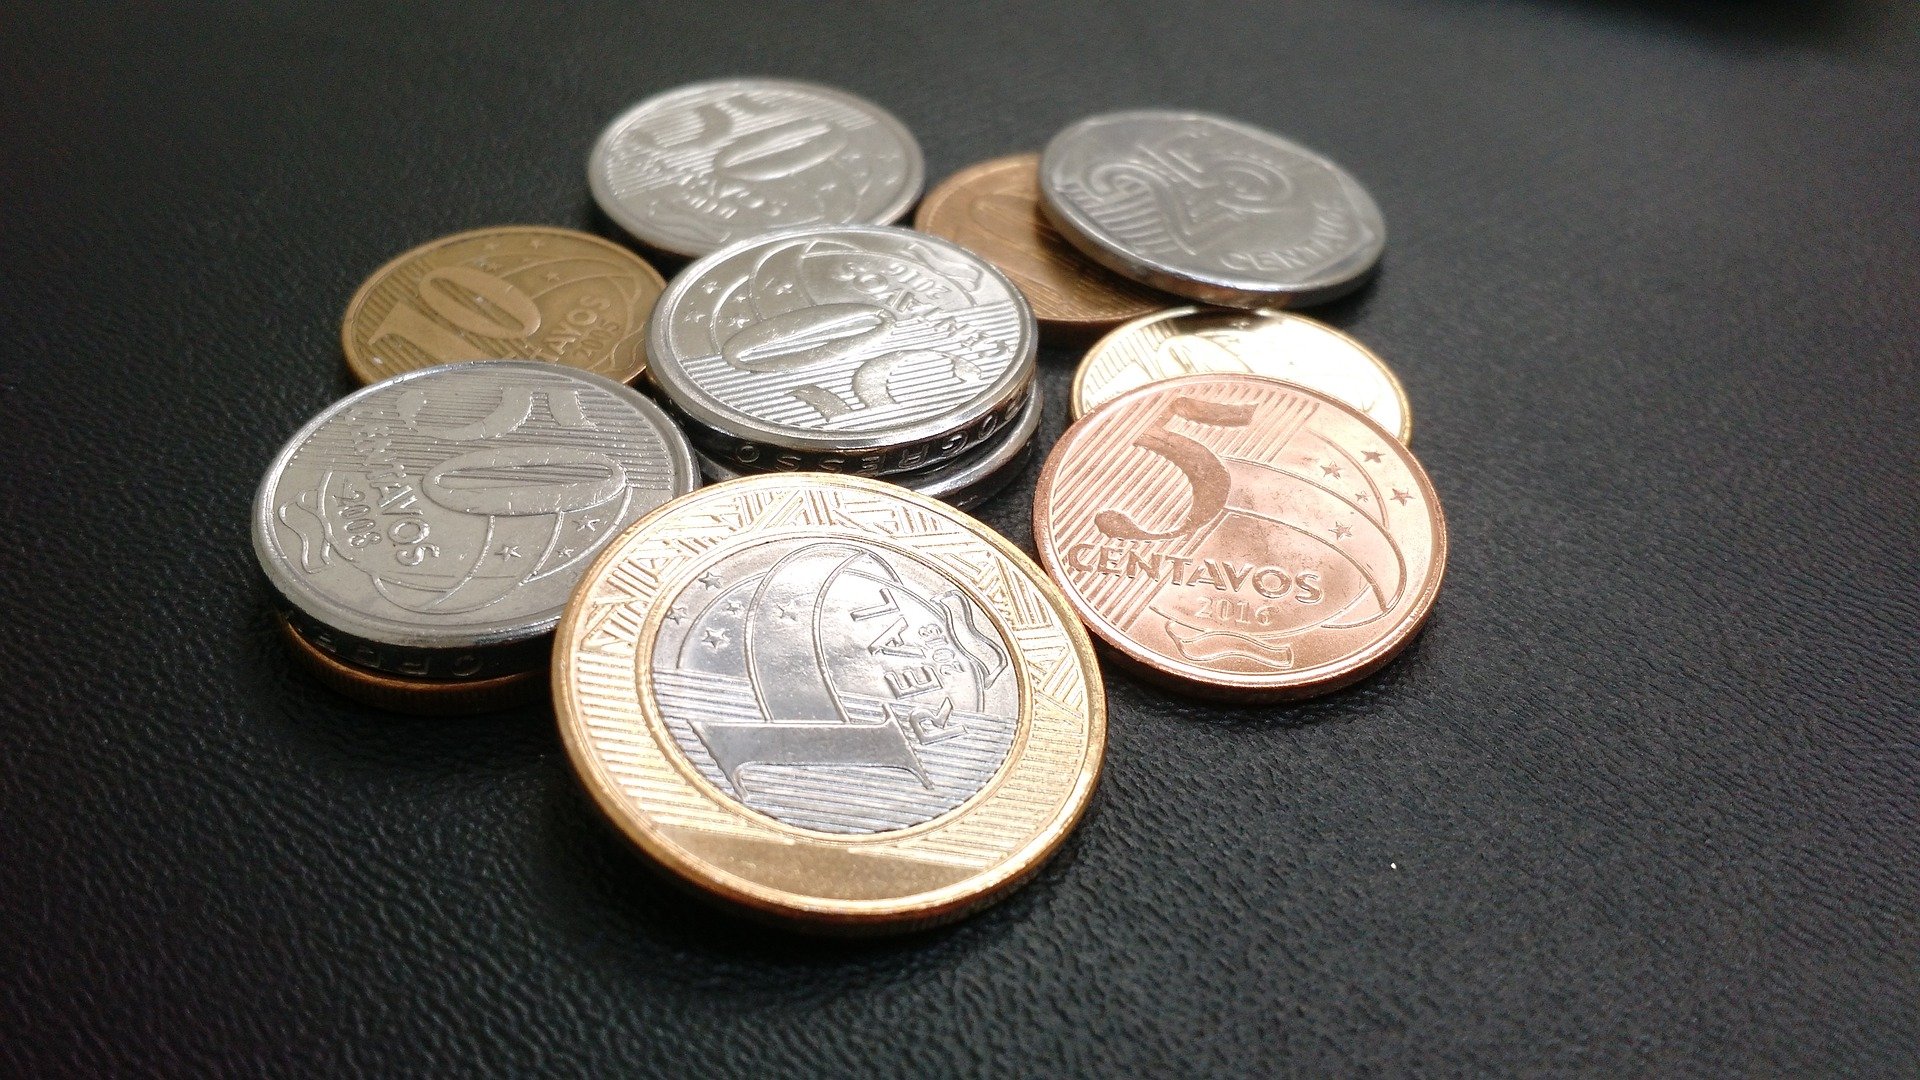 Erro na produção de moedas de R $0,50 tornam algumas raras!